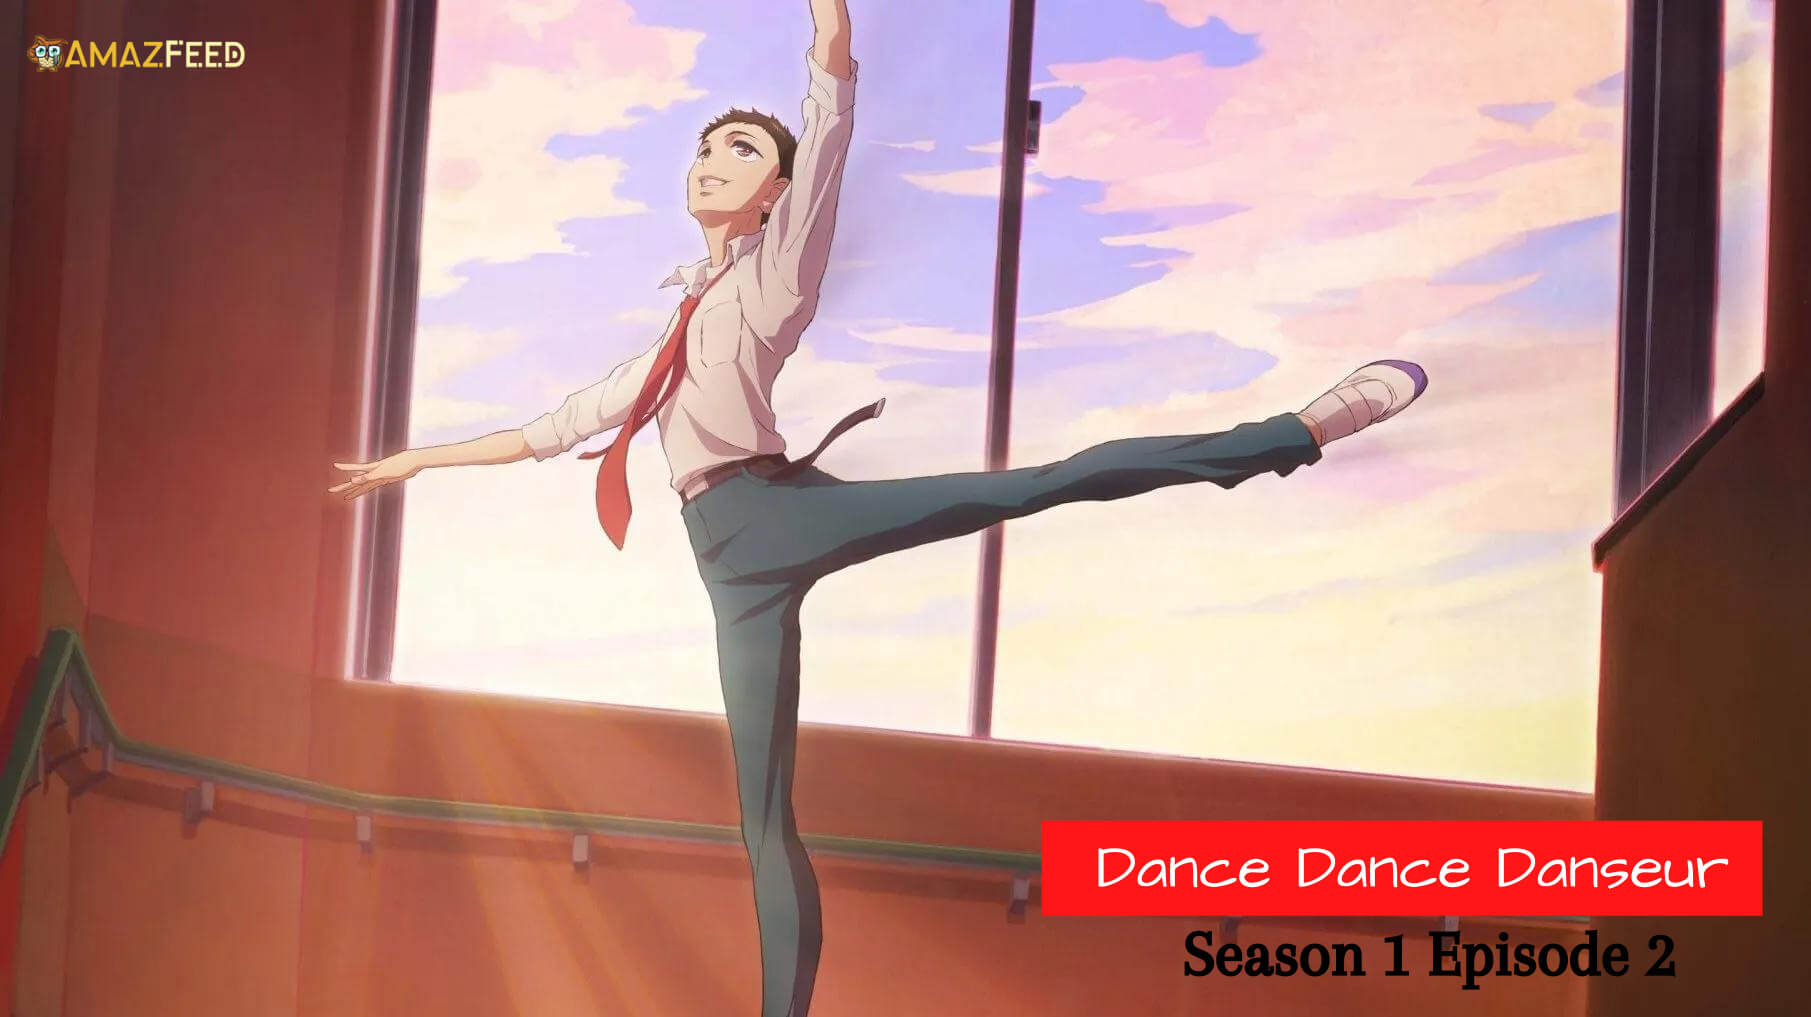 Dance Dance Danseur Season 1 Episode 2 Release date